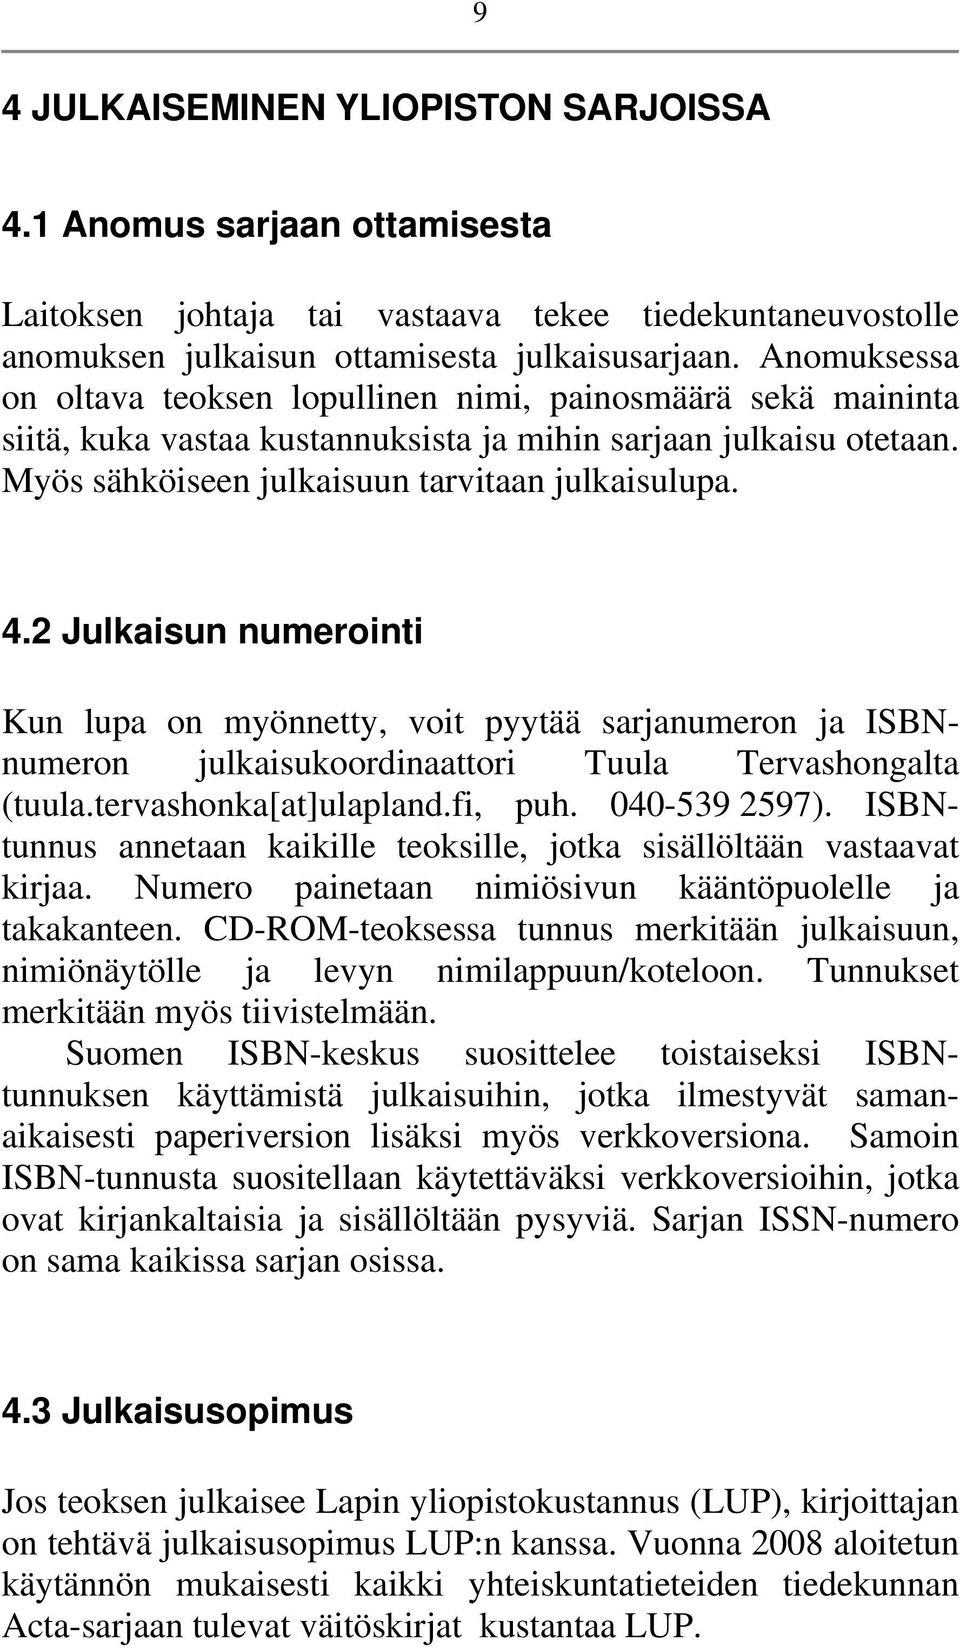 2 Julkaisun numerointi Kun lupa on myönnetty, voit pyytää sarjanumeron ja ISBNnumeron julkaisukoordinaattori Tuula Tervashongalta (tuula.tervashonka[at]ulapland.fi, puh. 040-539 2597).